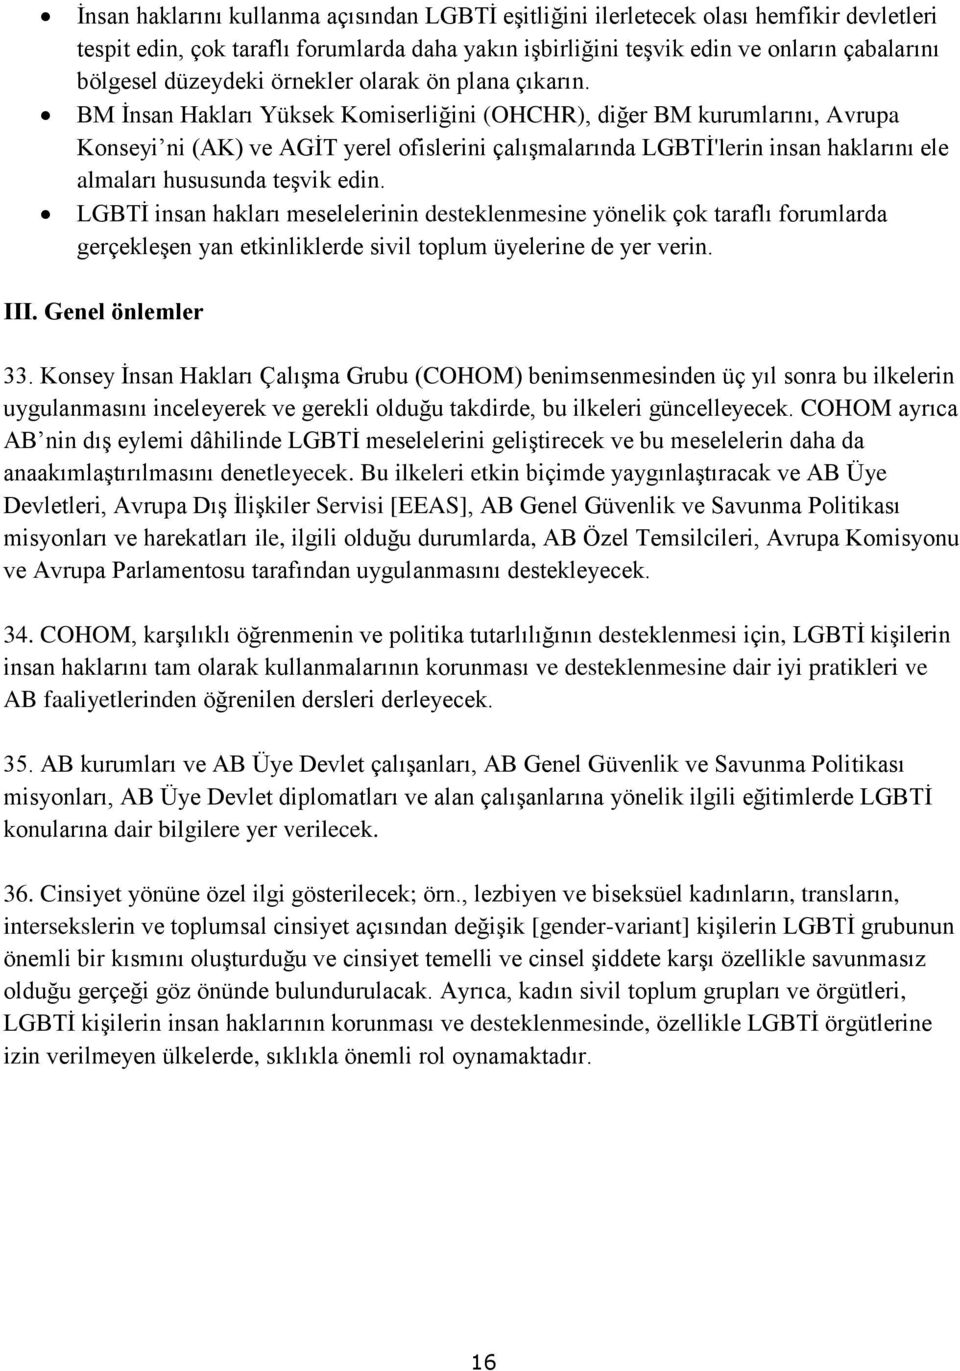 BM İnsan Hakları Yüksek Komiserliğini (OHCHR), diğer BM kurumlarını, Avrupa Konseyi ni (AK) ve AGİT yerel ofislerini çalışmalarında LGBTİ'lerin insan haklarını ele almaları hususunda teşvik edin.